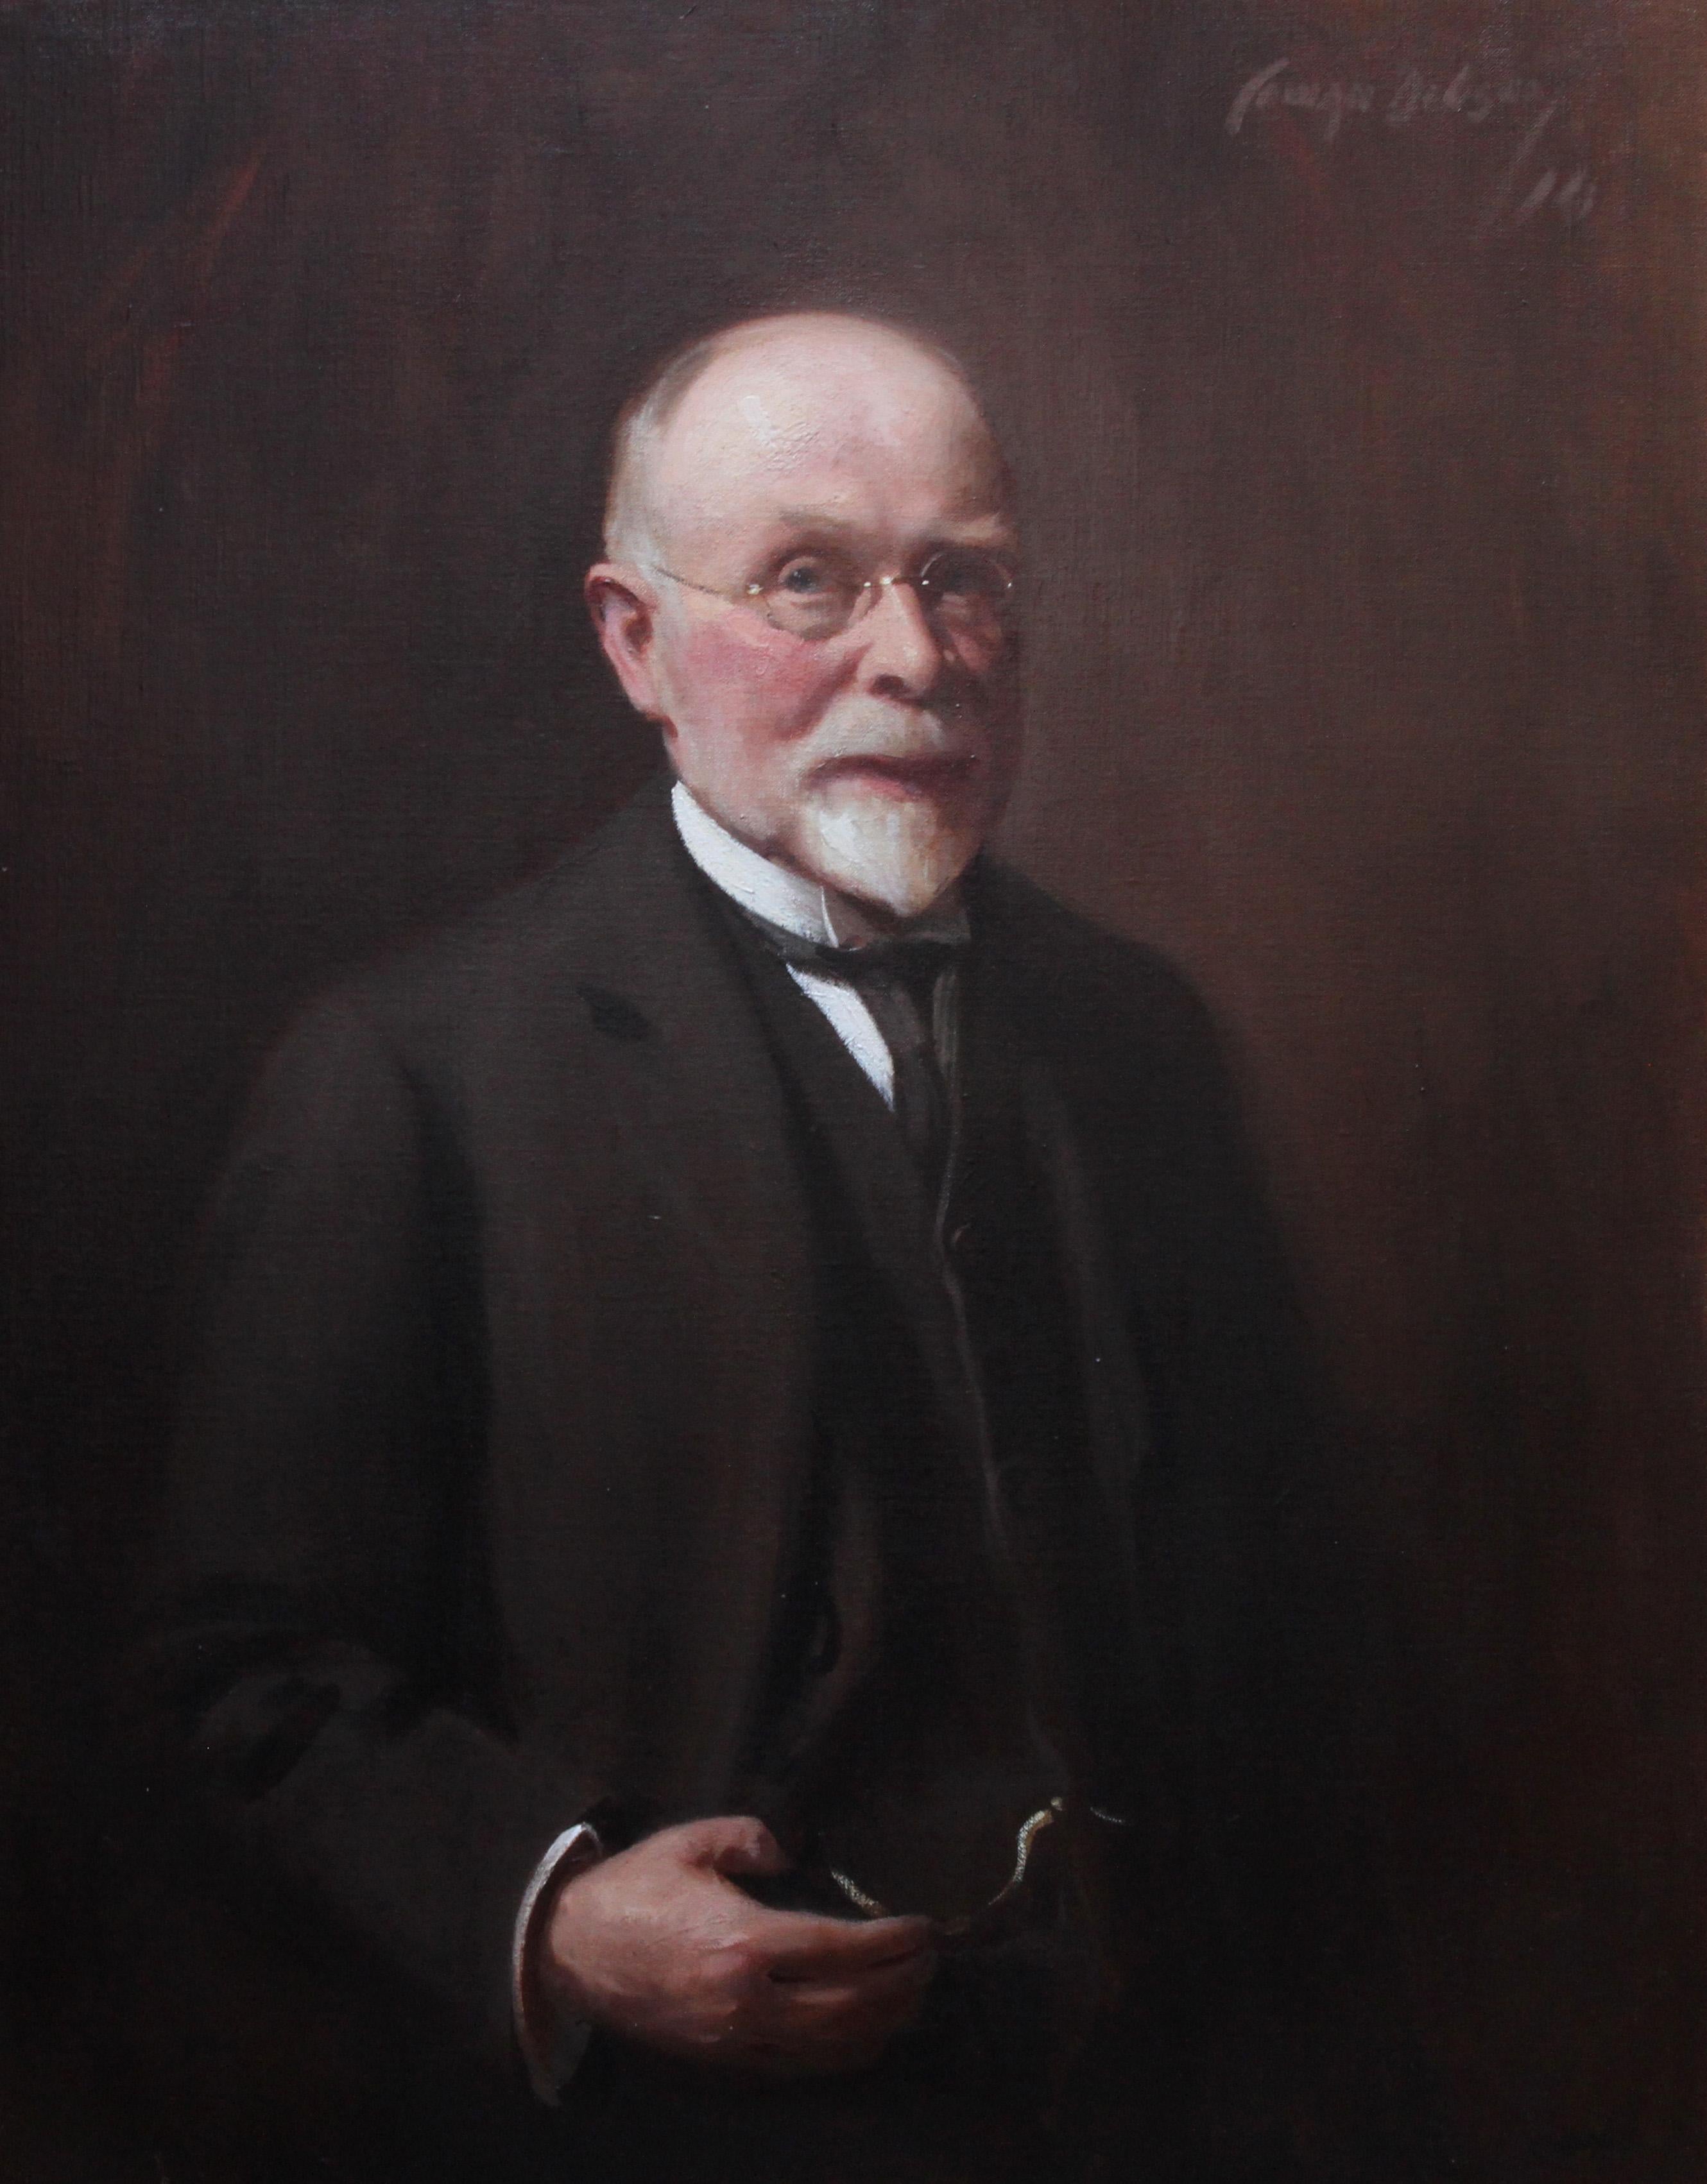 Porträt von Mr. R. H. Sinclair – schottisches männliches Porträt, Ölgemälde, 1914  – Painting von David Cowan Dobson